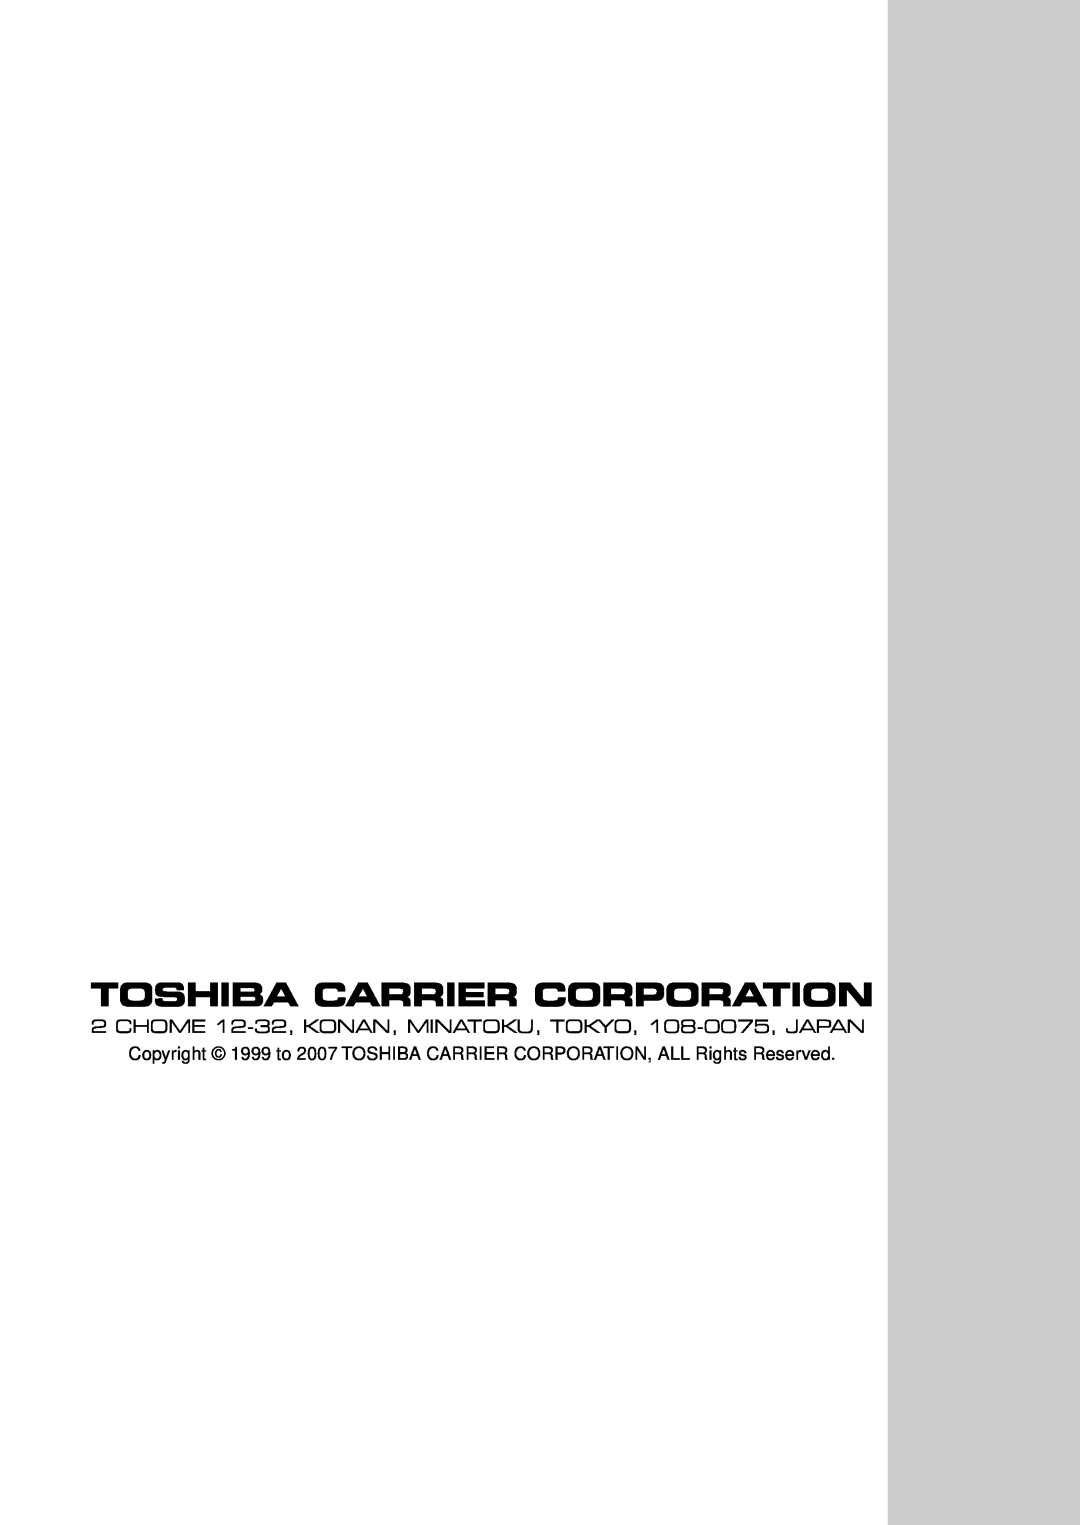 Toshiba RAV-SP1102UT-E, RAV-SM1102CT-E Toshiba Carrier Corporation, CHOME 12-32, KONAN, MINATOKU, TOKYO, 108-0075, JAPAN 